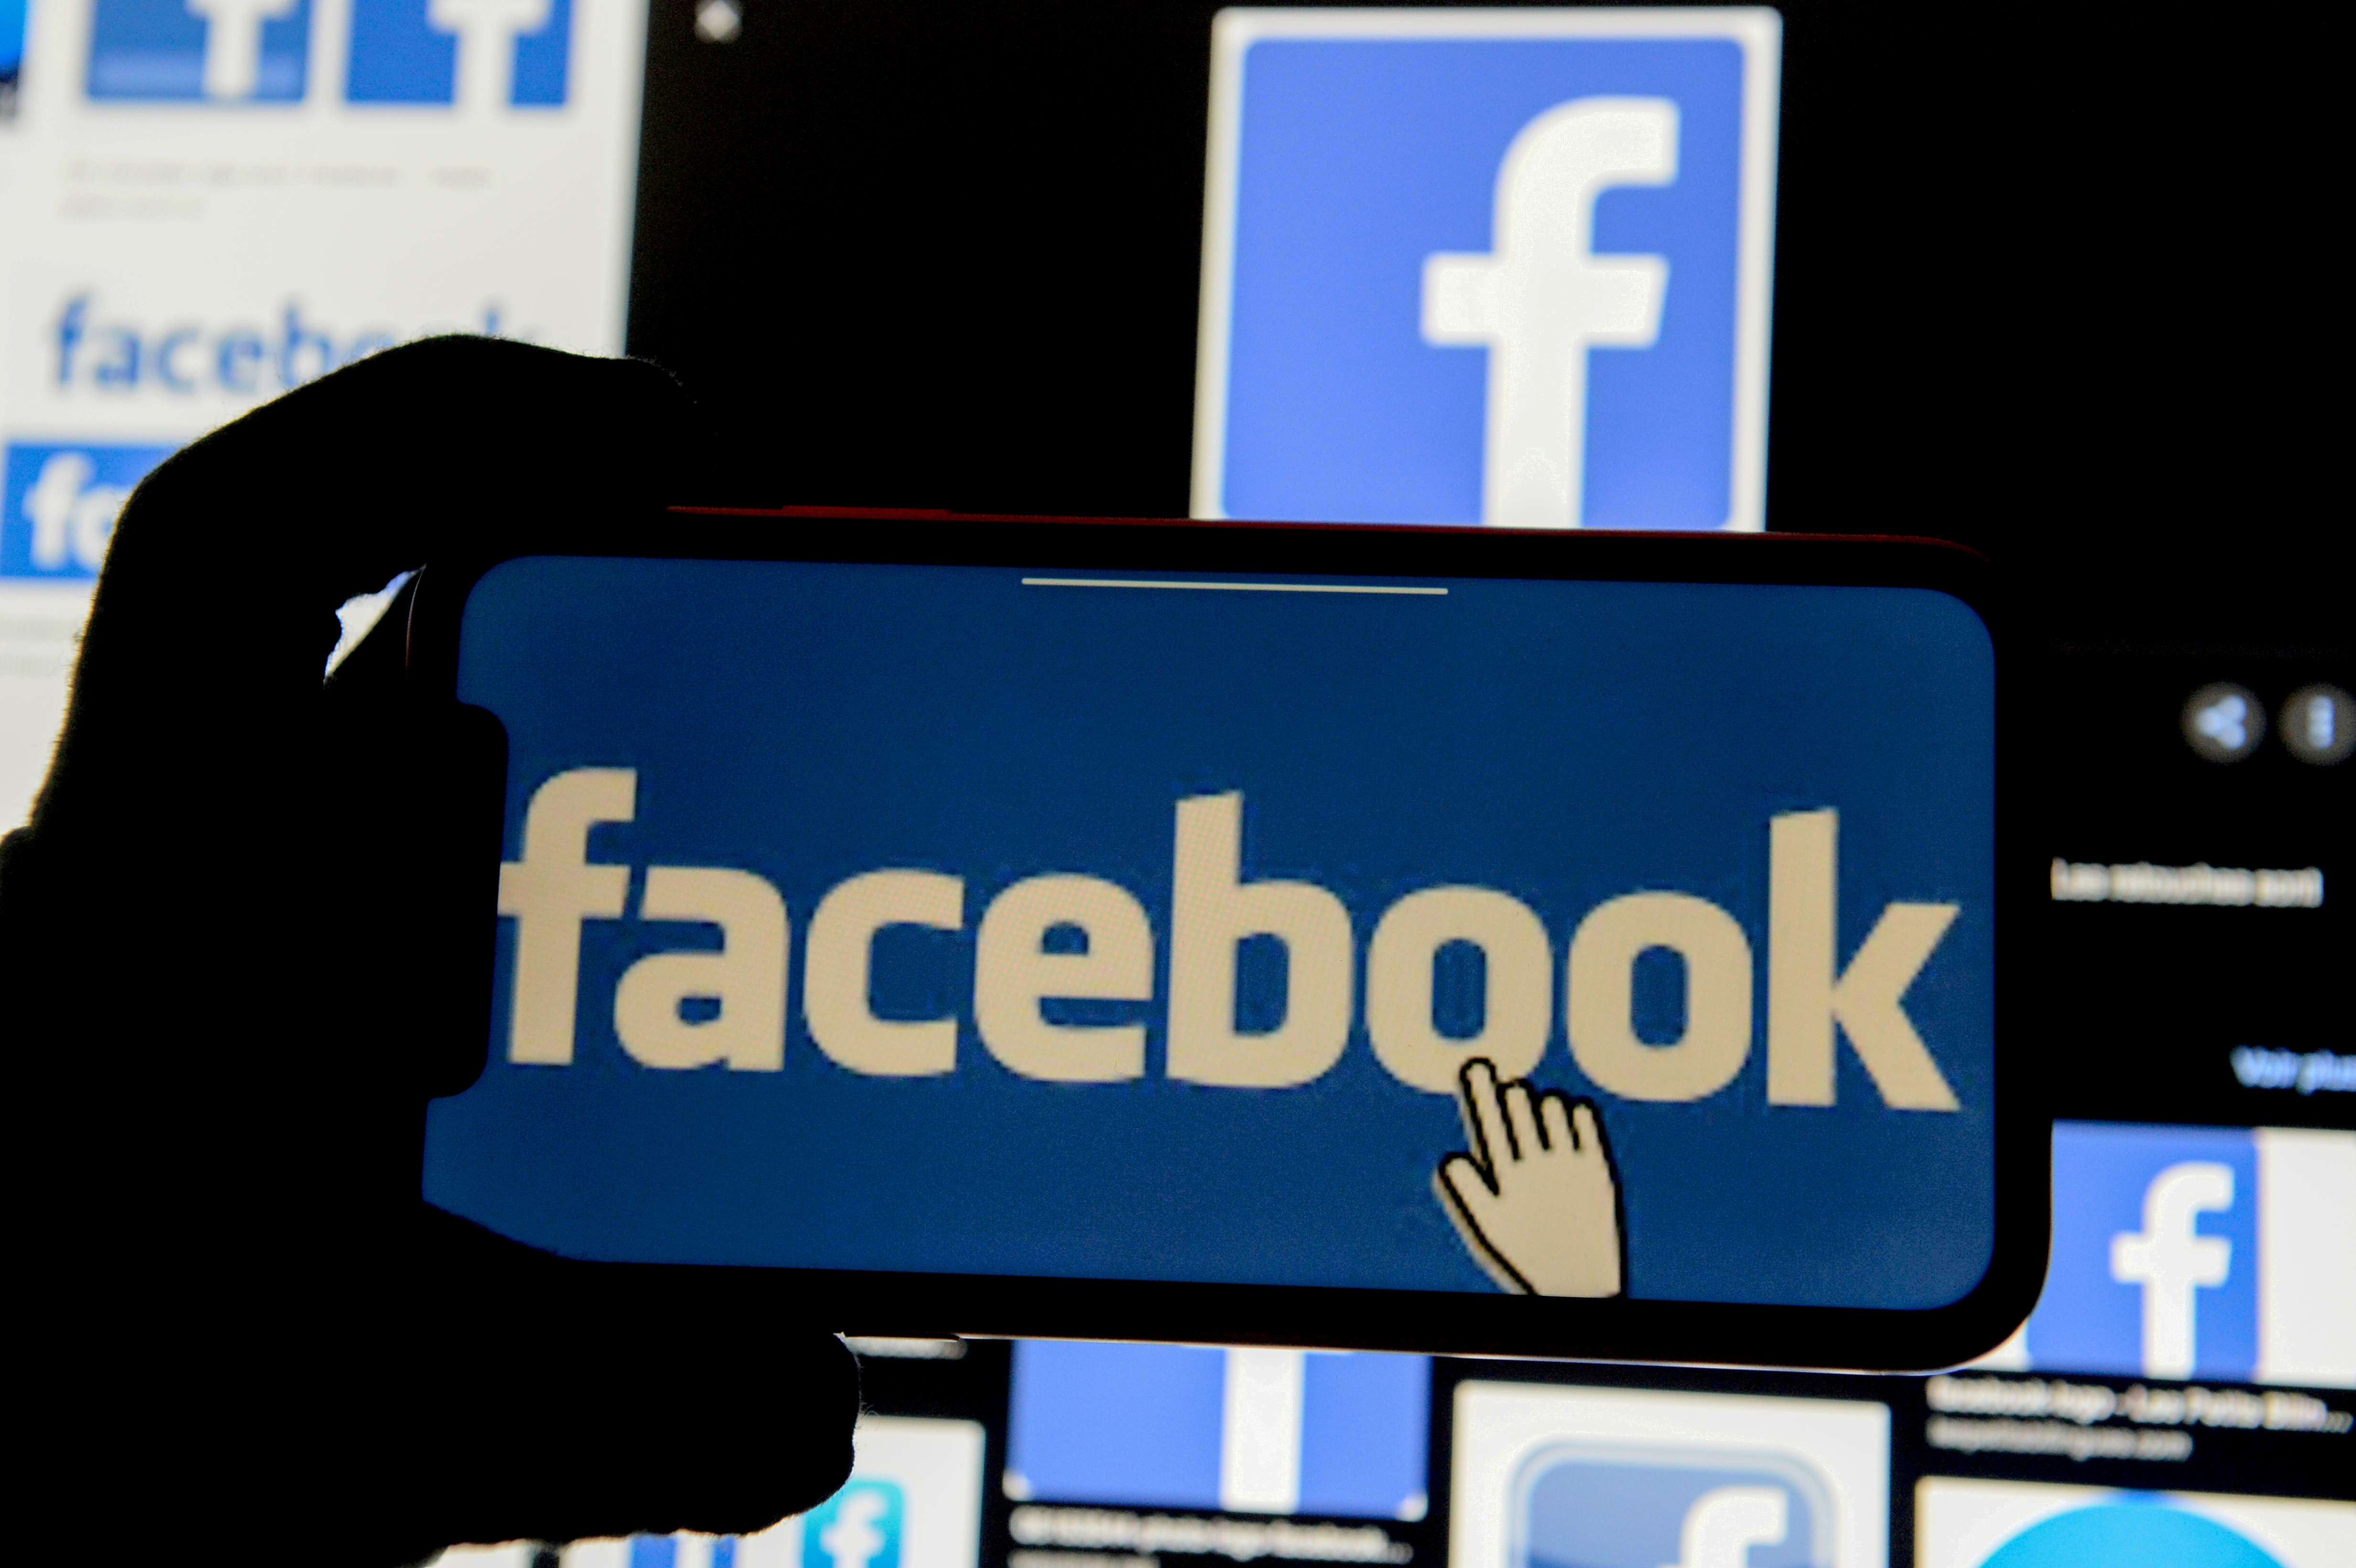 Se filtraron los datos personales de más de 553 millones de usuarios de Facebook que provendrían de una brecha de seguridad de 2019 (REUTERS/Johanna Geron/Illustration/File Photo)